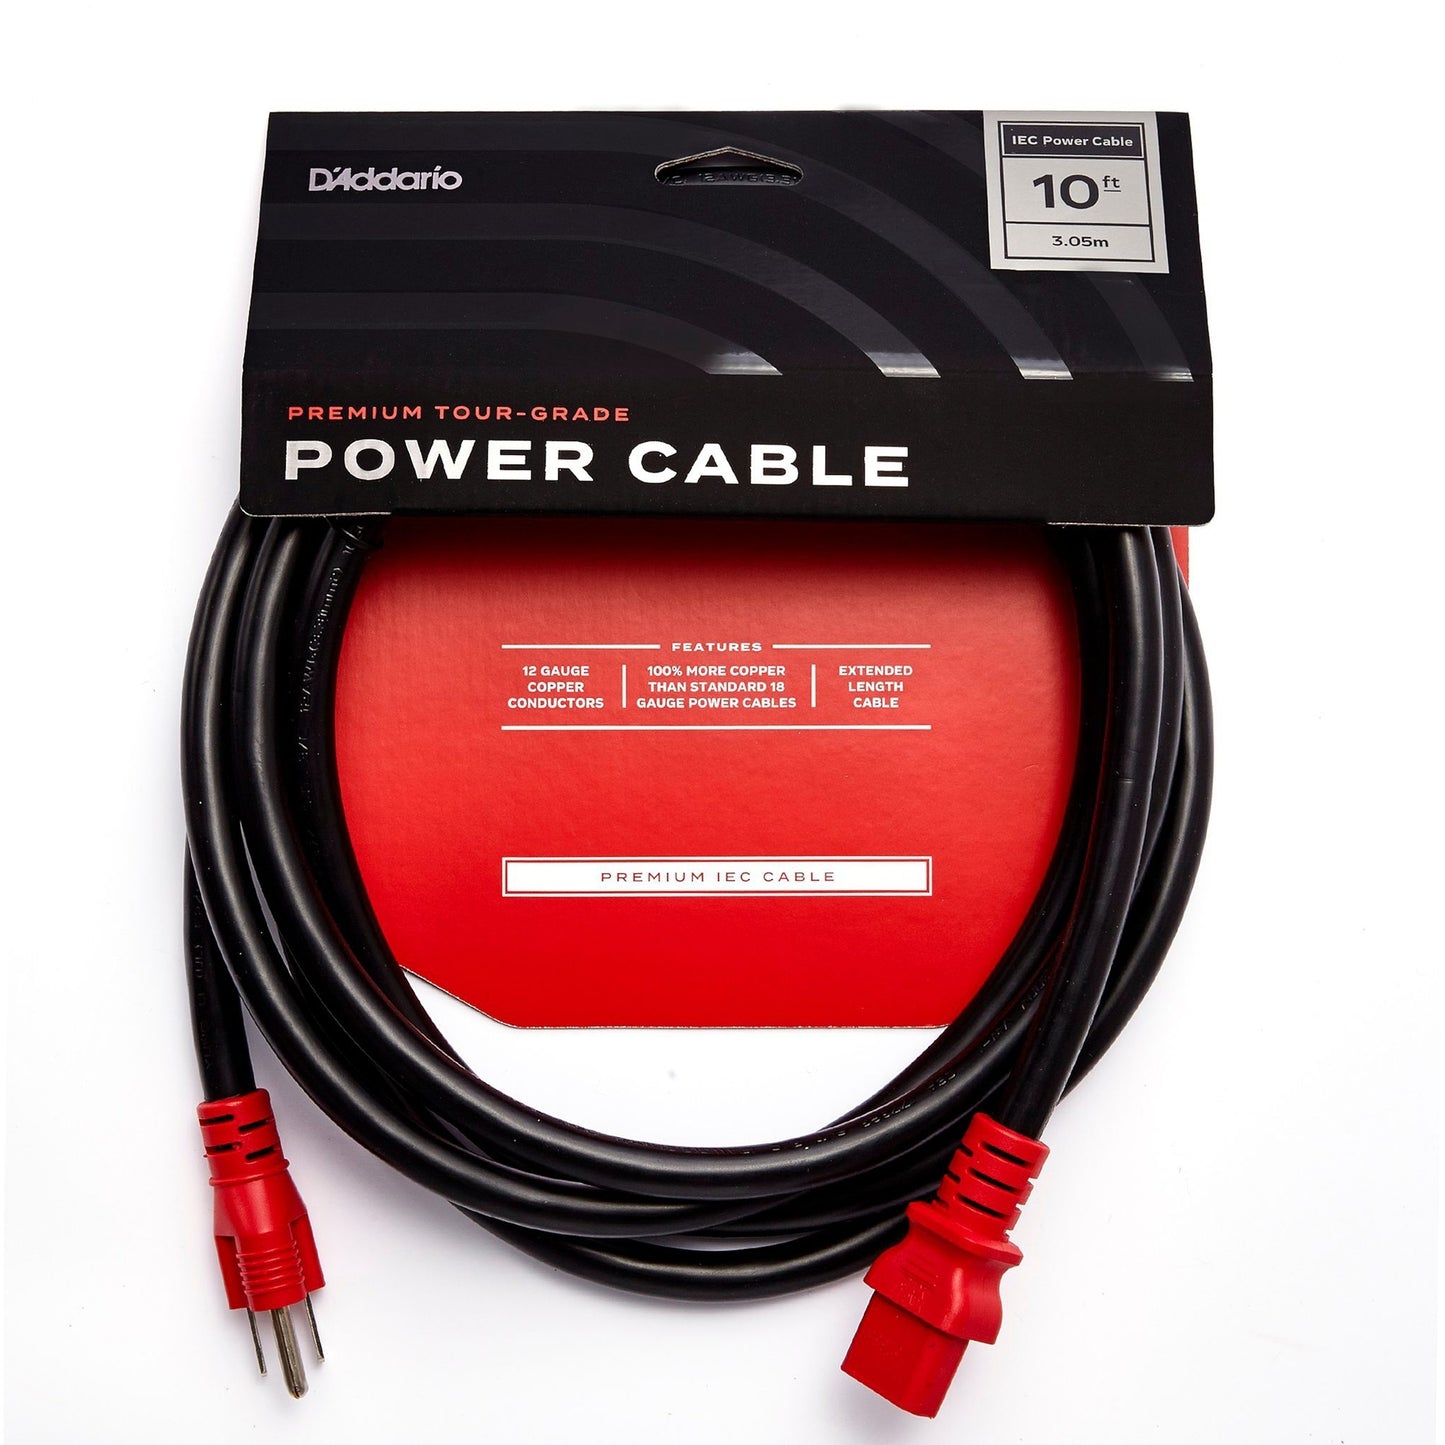 D'Addario PW-IECB-10 IEC to NEMA Plug Power Cable